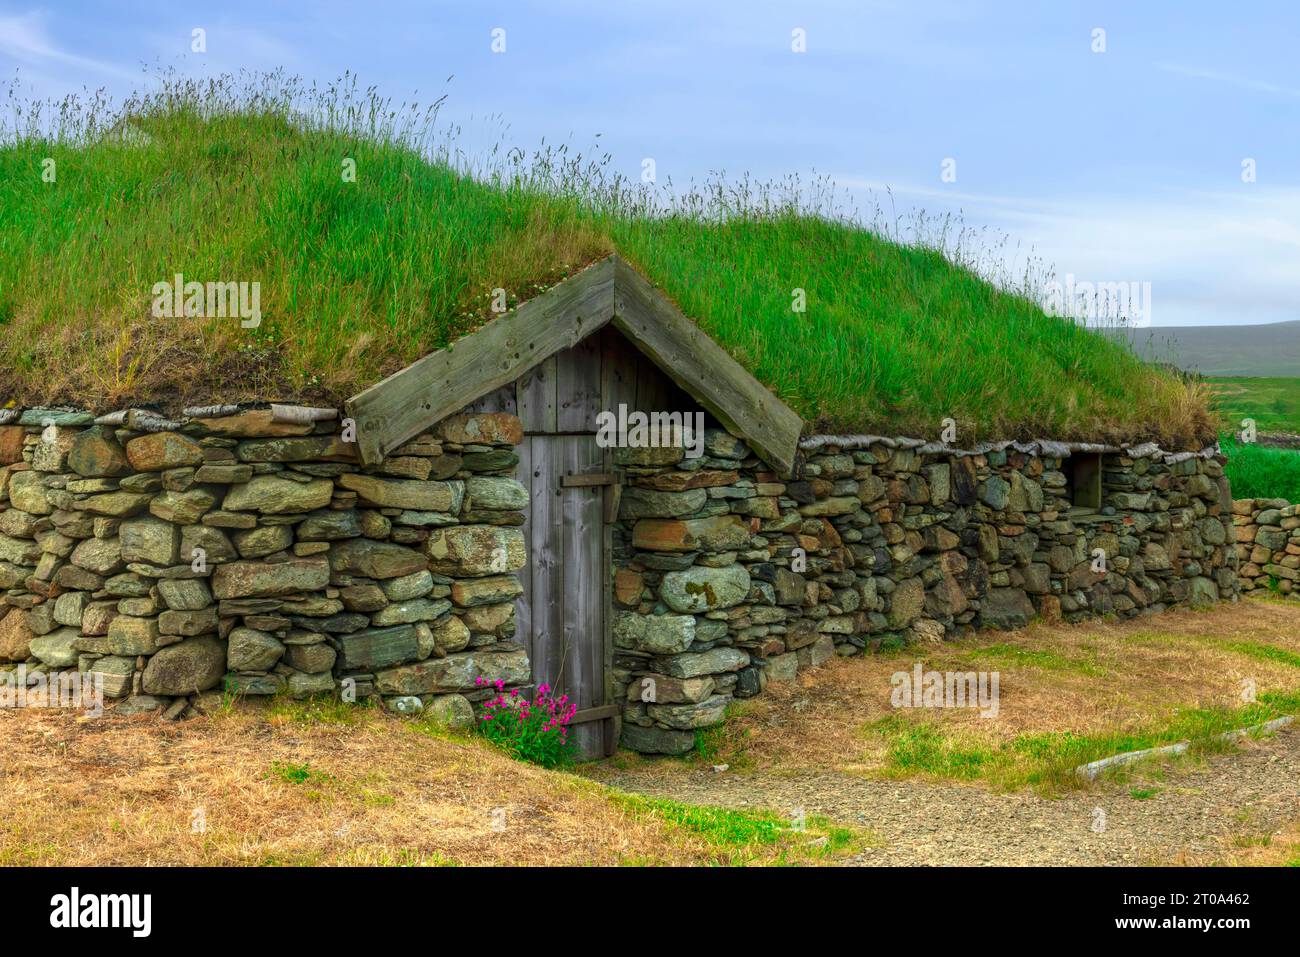 Il progetto vichingo vicino Haroldswick su Unst, Isole Shetland. Foto Stock